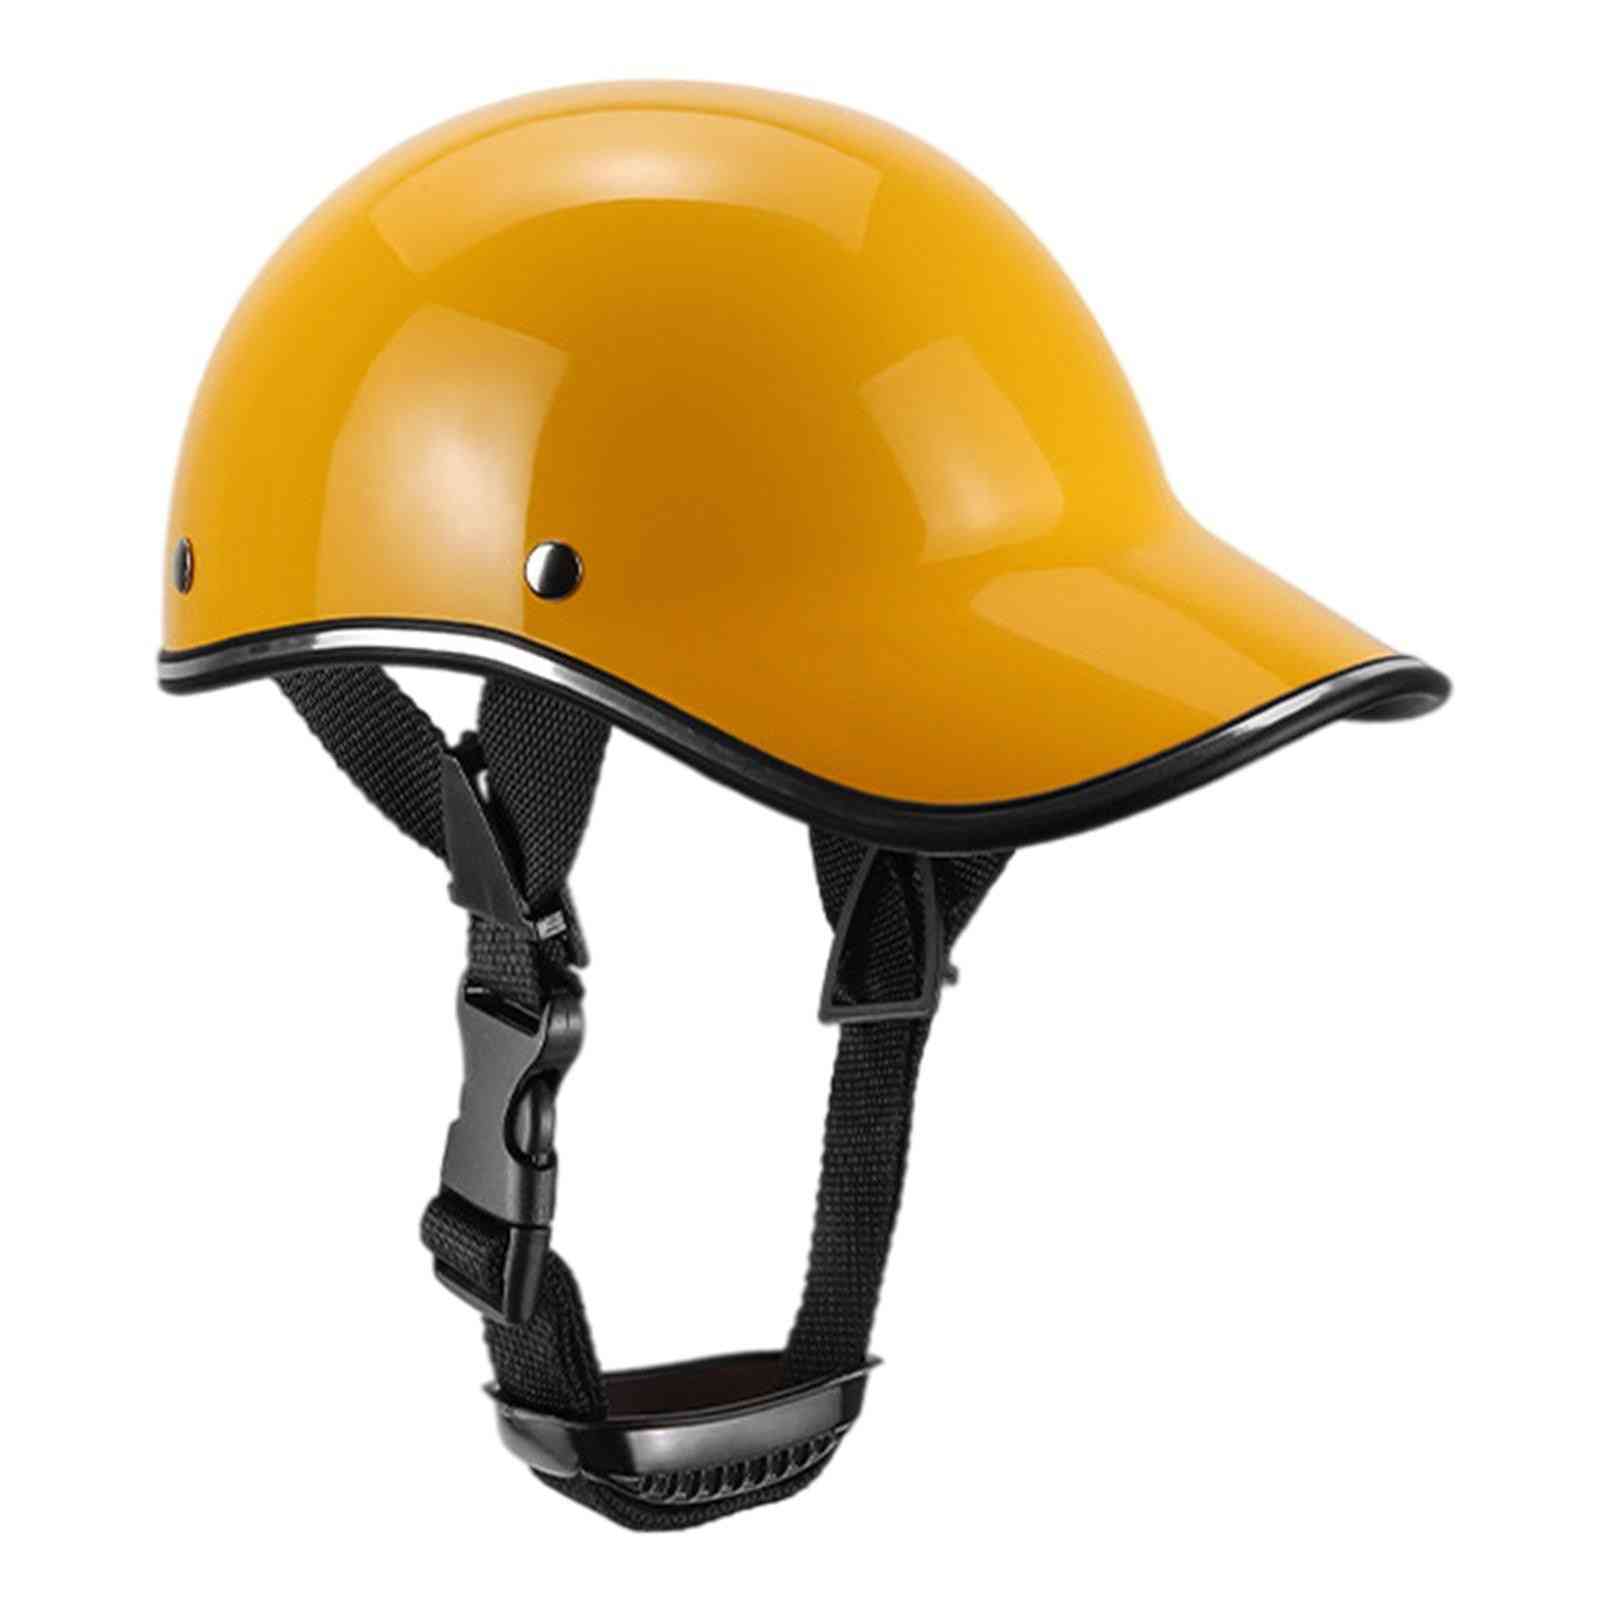 Bike Helmet Biking Headgear Hard Caps Sunshade Sun Protection